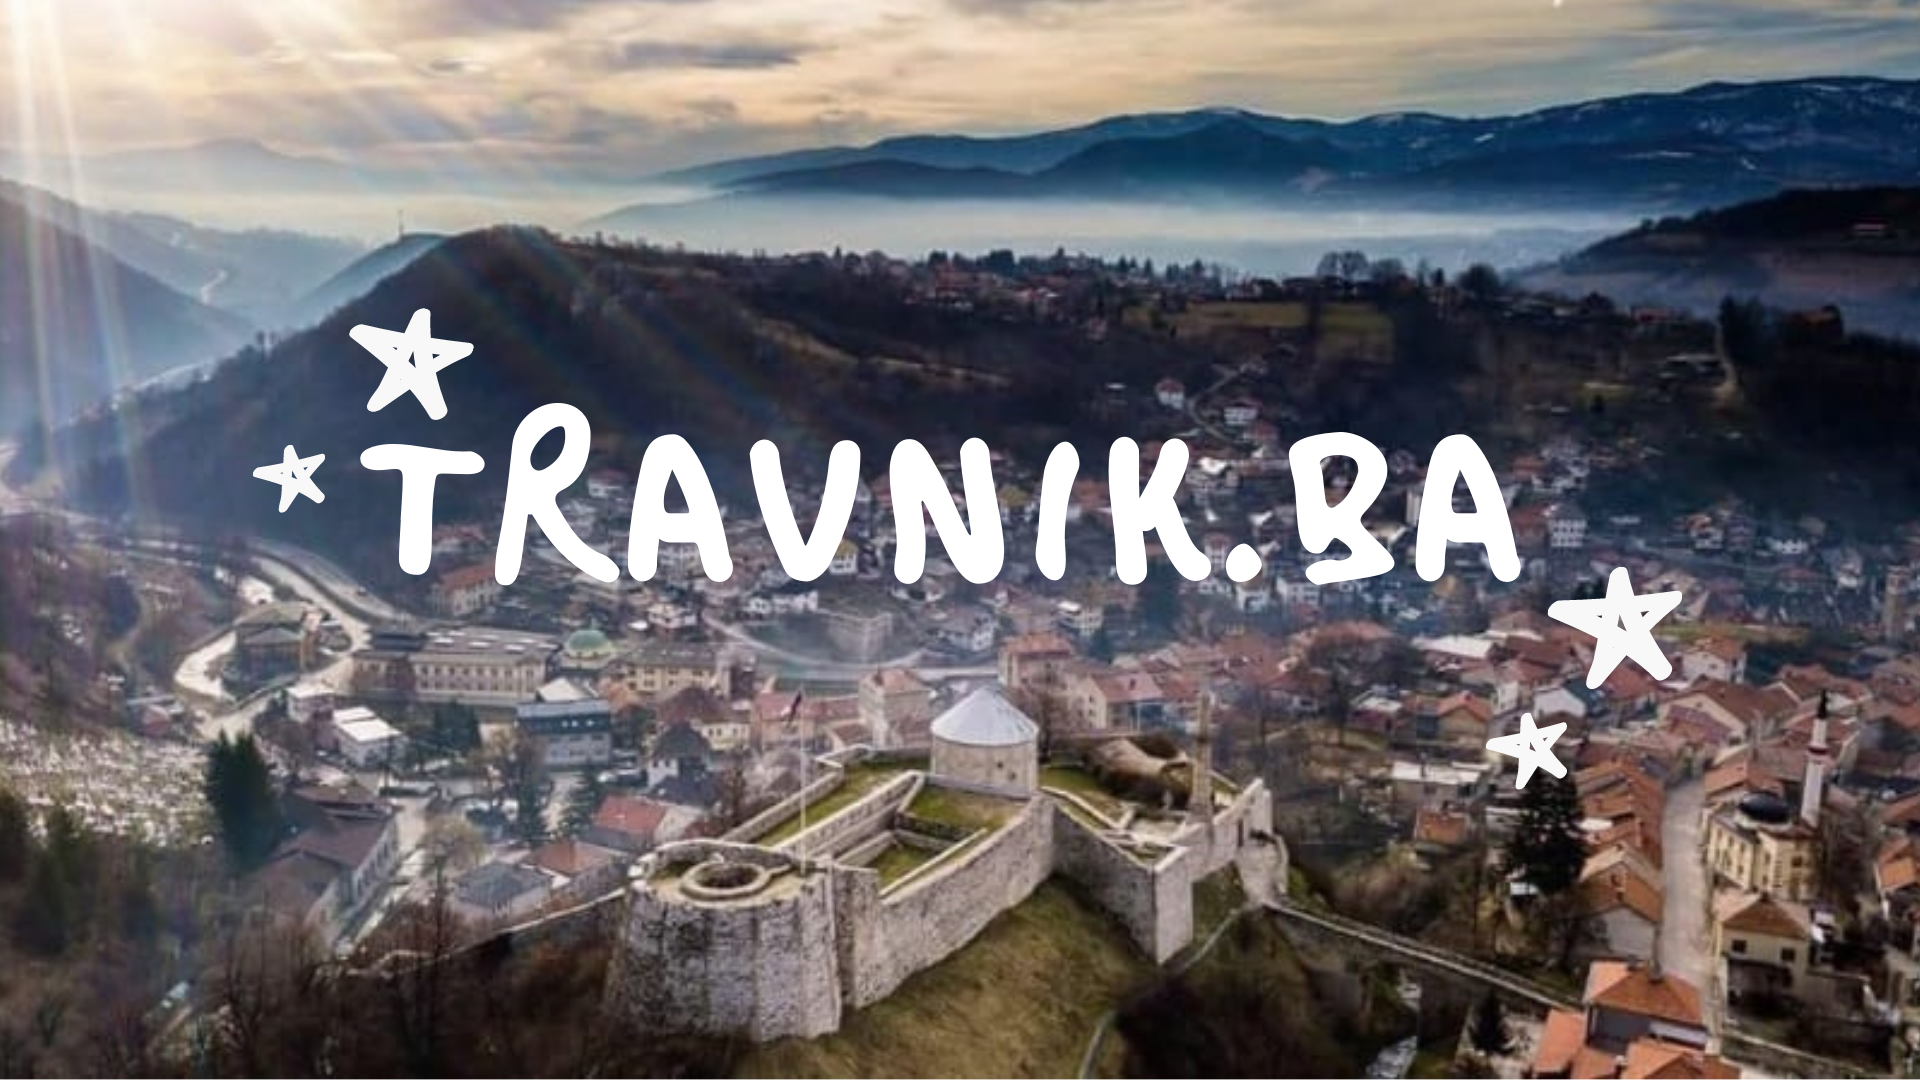 Javni oglas za izbor i imenovanje na pozicije članova Nadzornih i Upravnih odbora javnih ustanova i privrednih društava čiji je osnivač Općina Travnik